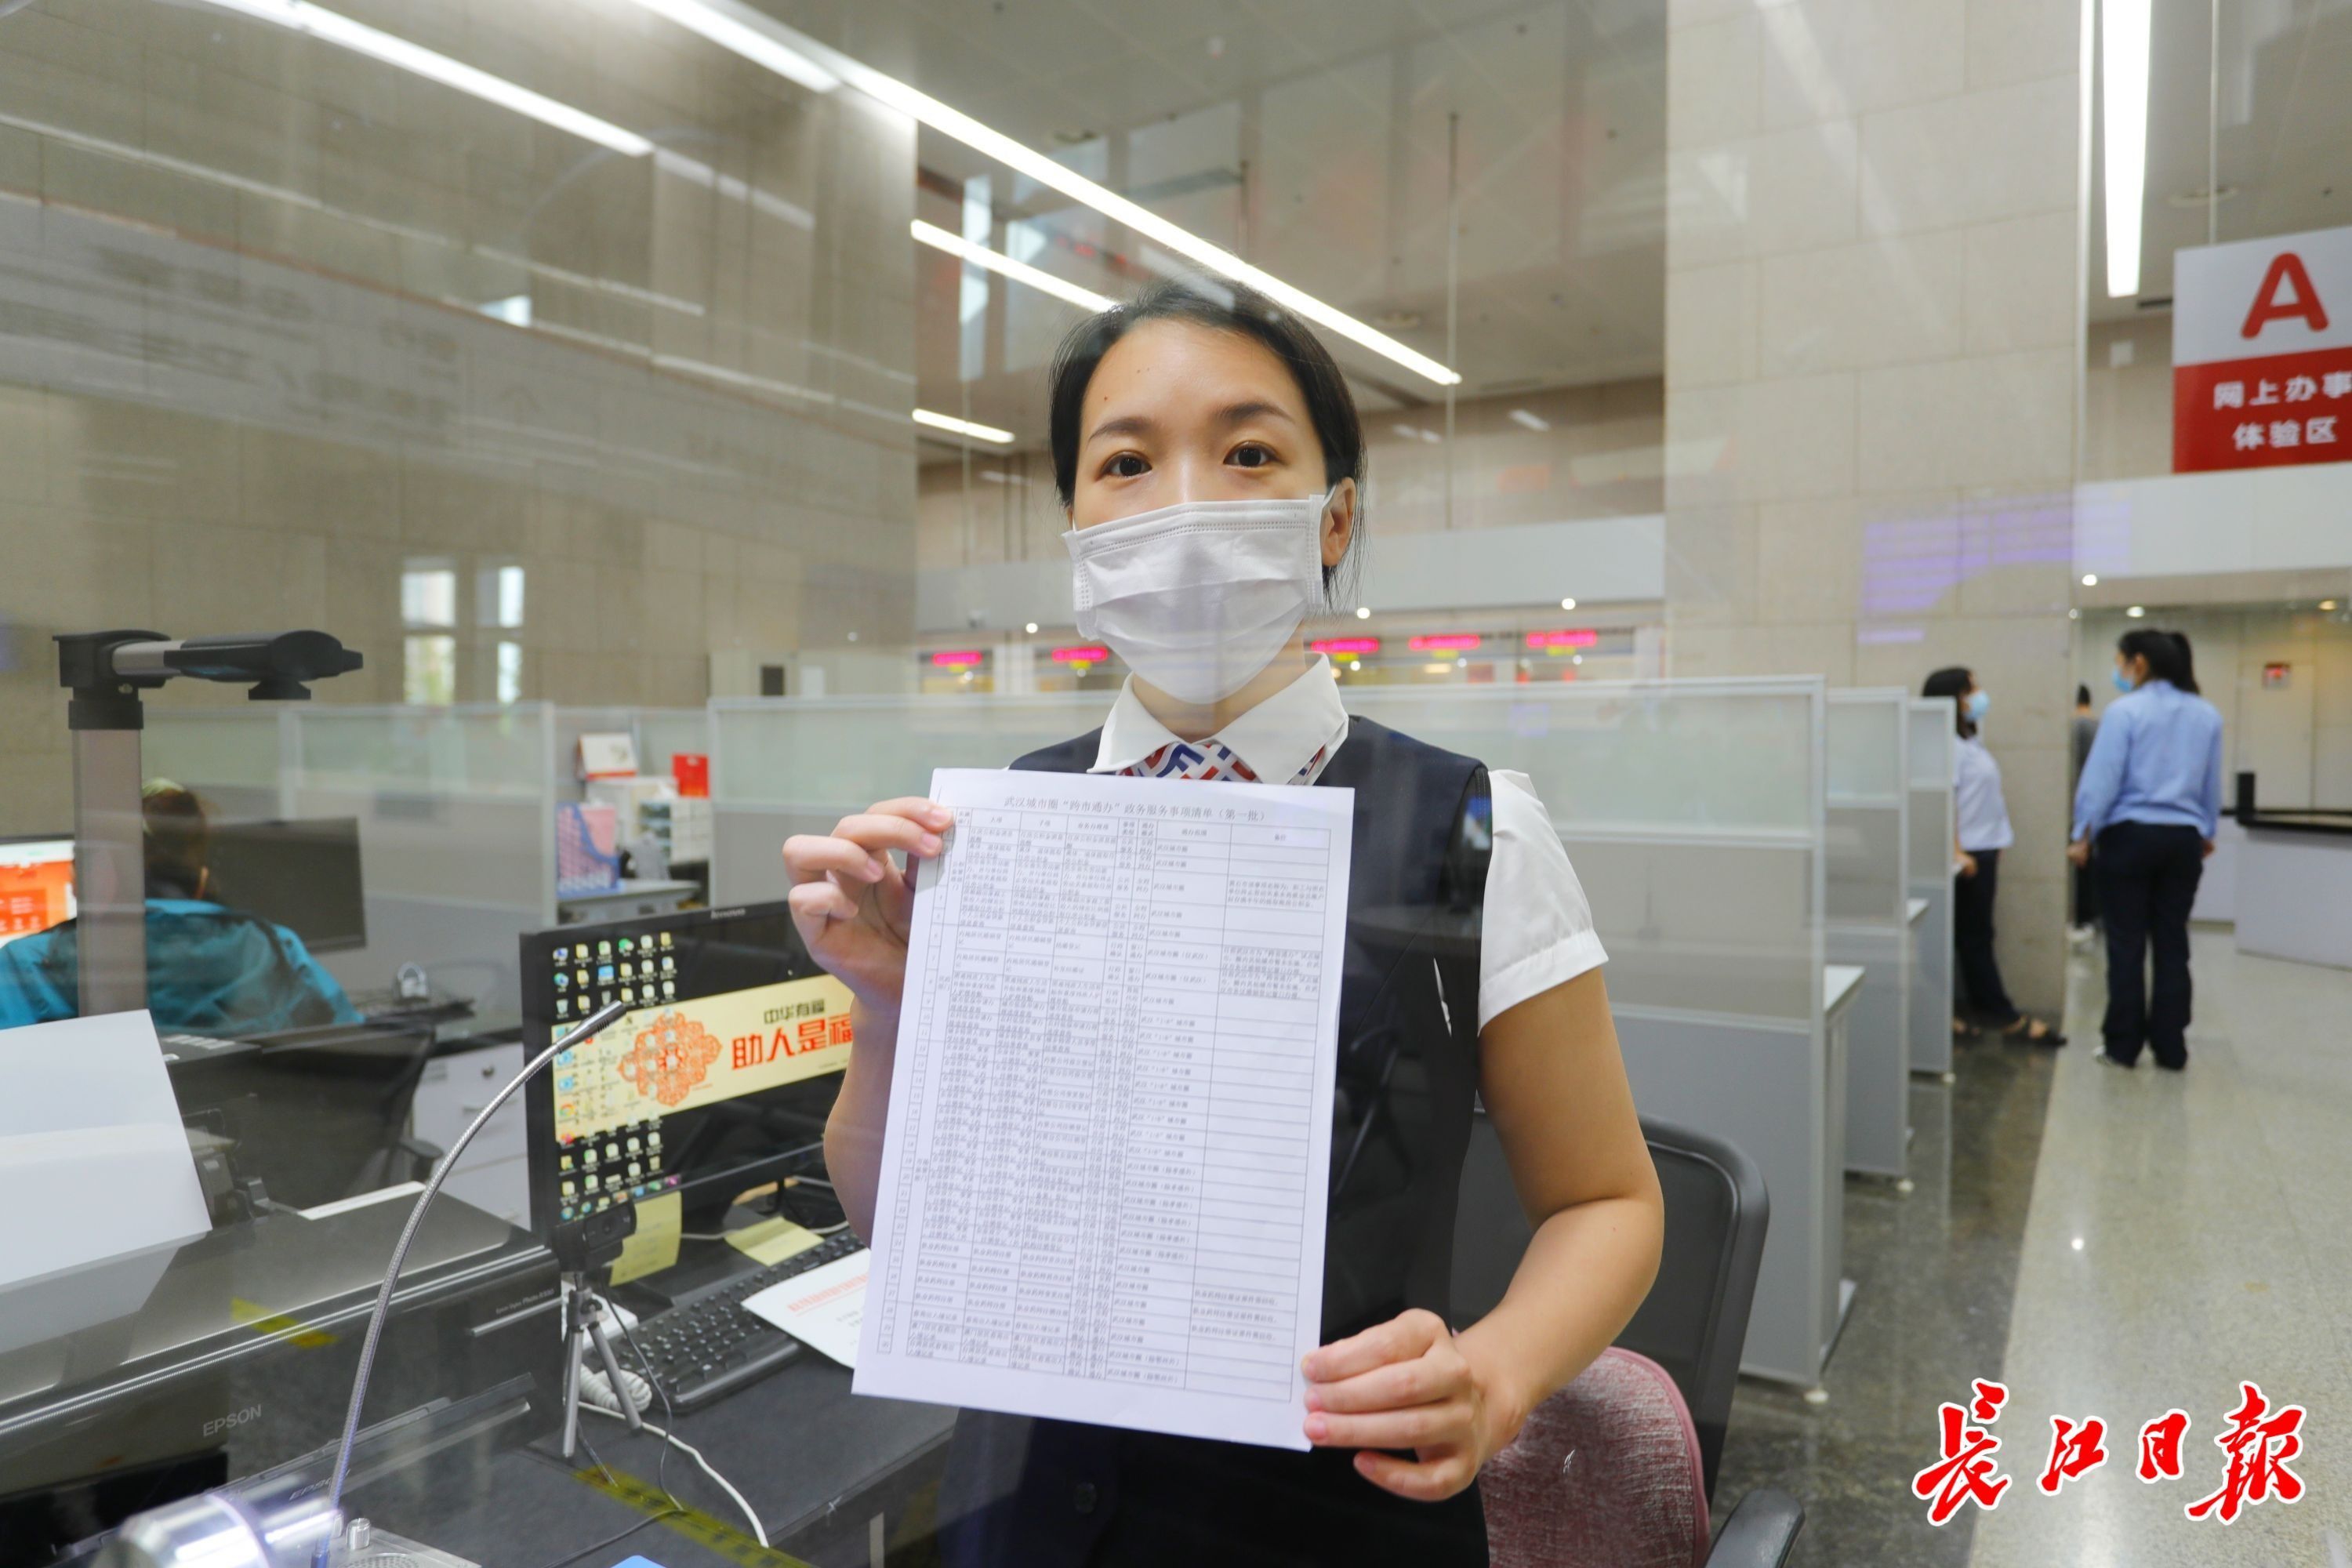 武汉城市圈通办综合窗口可以办理106项服务。长江日报记者杨涛　摄